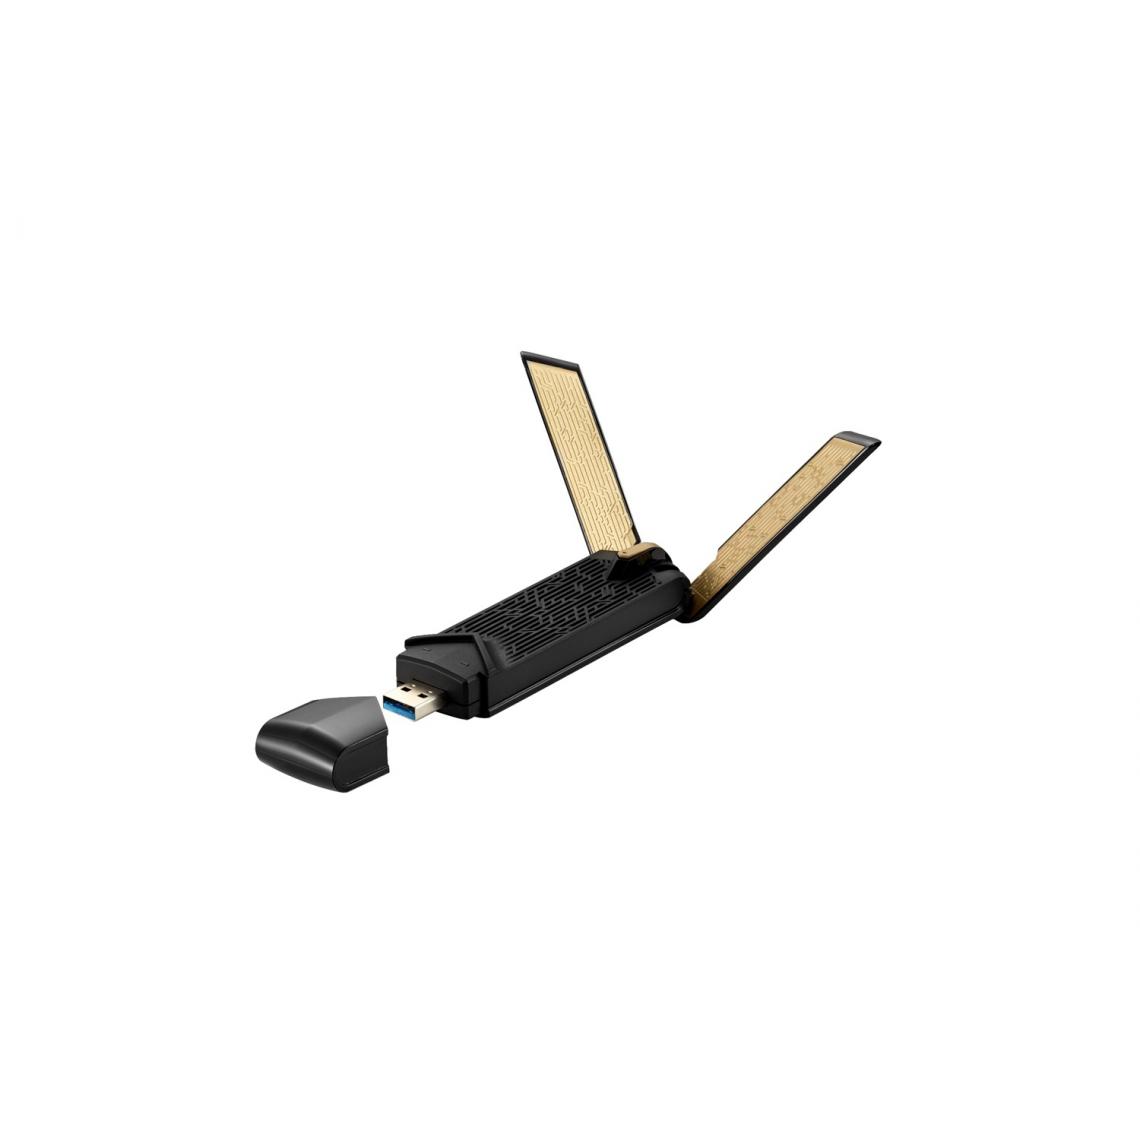 Asus - Asus Adaptateur WiFi USB double bande - Modem / Routeur / Points d'accès